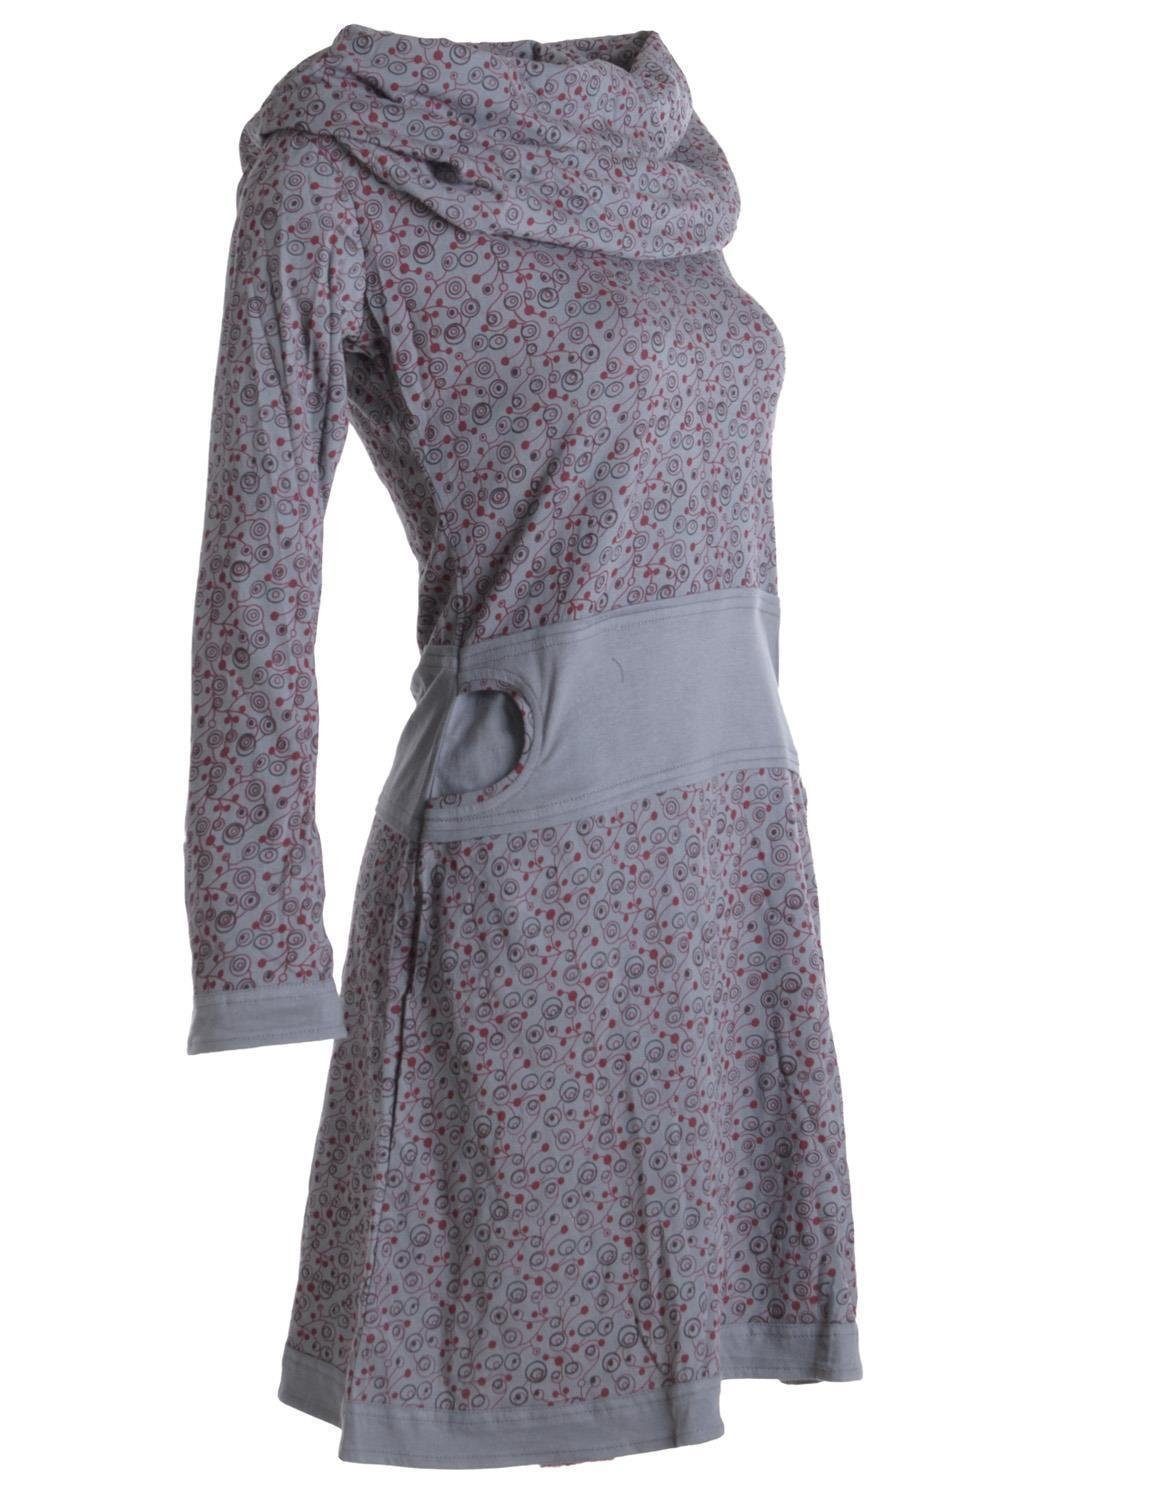 Vishes Jerseykleid mit Schalkragen aus Kleid Boho, grau Ethno, Style Goa, Baumwolle Bedrucktes Hippie